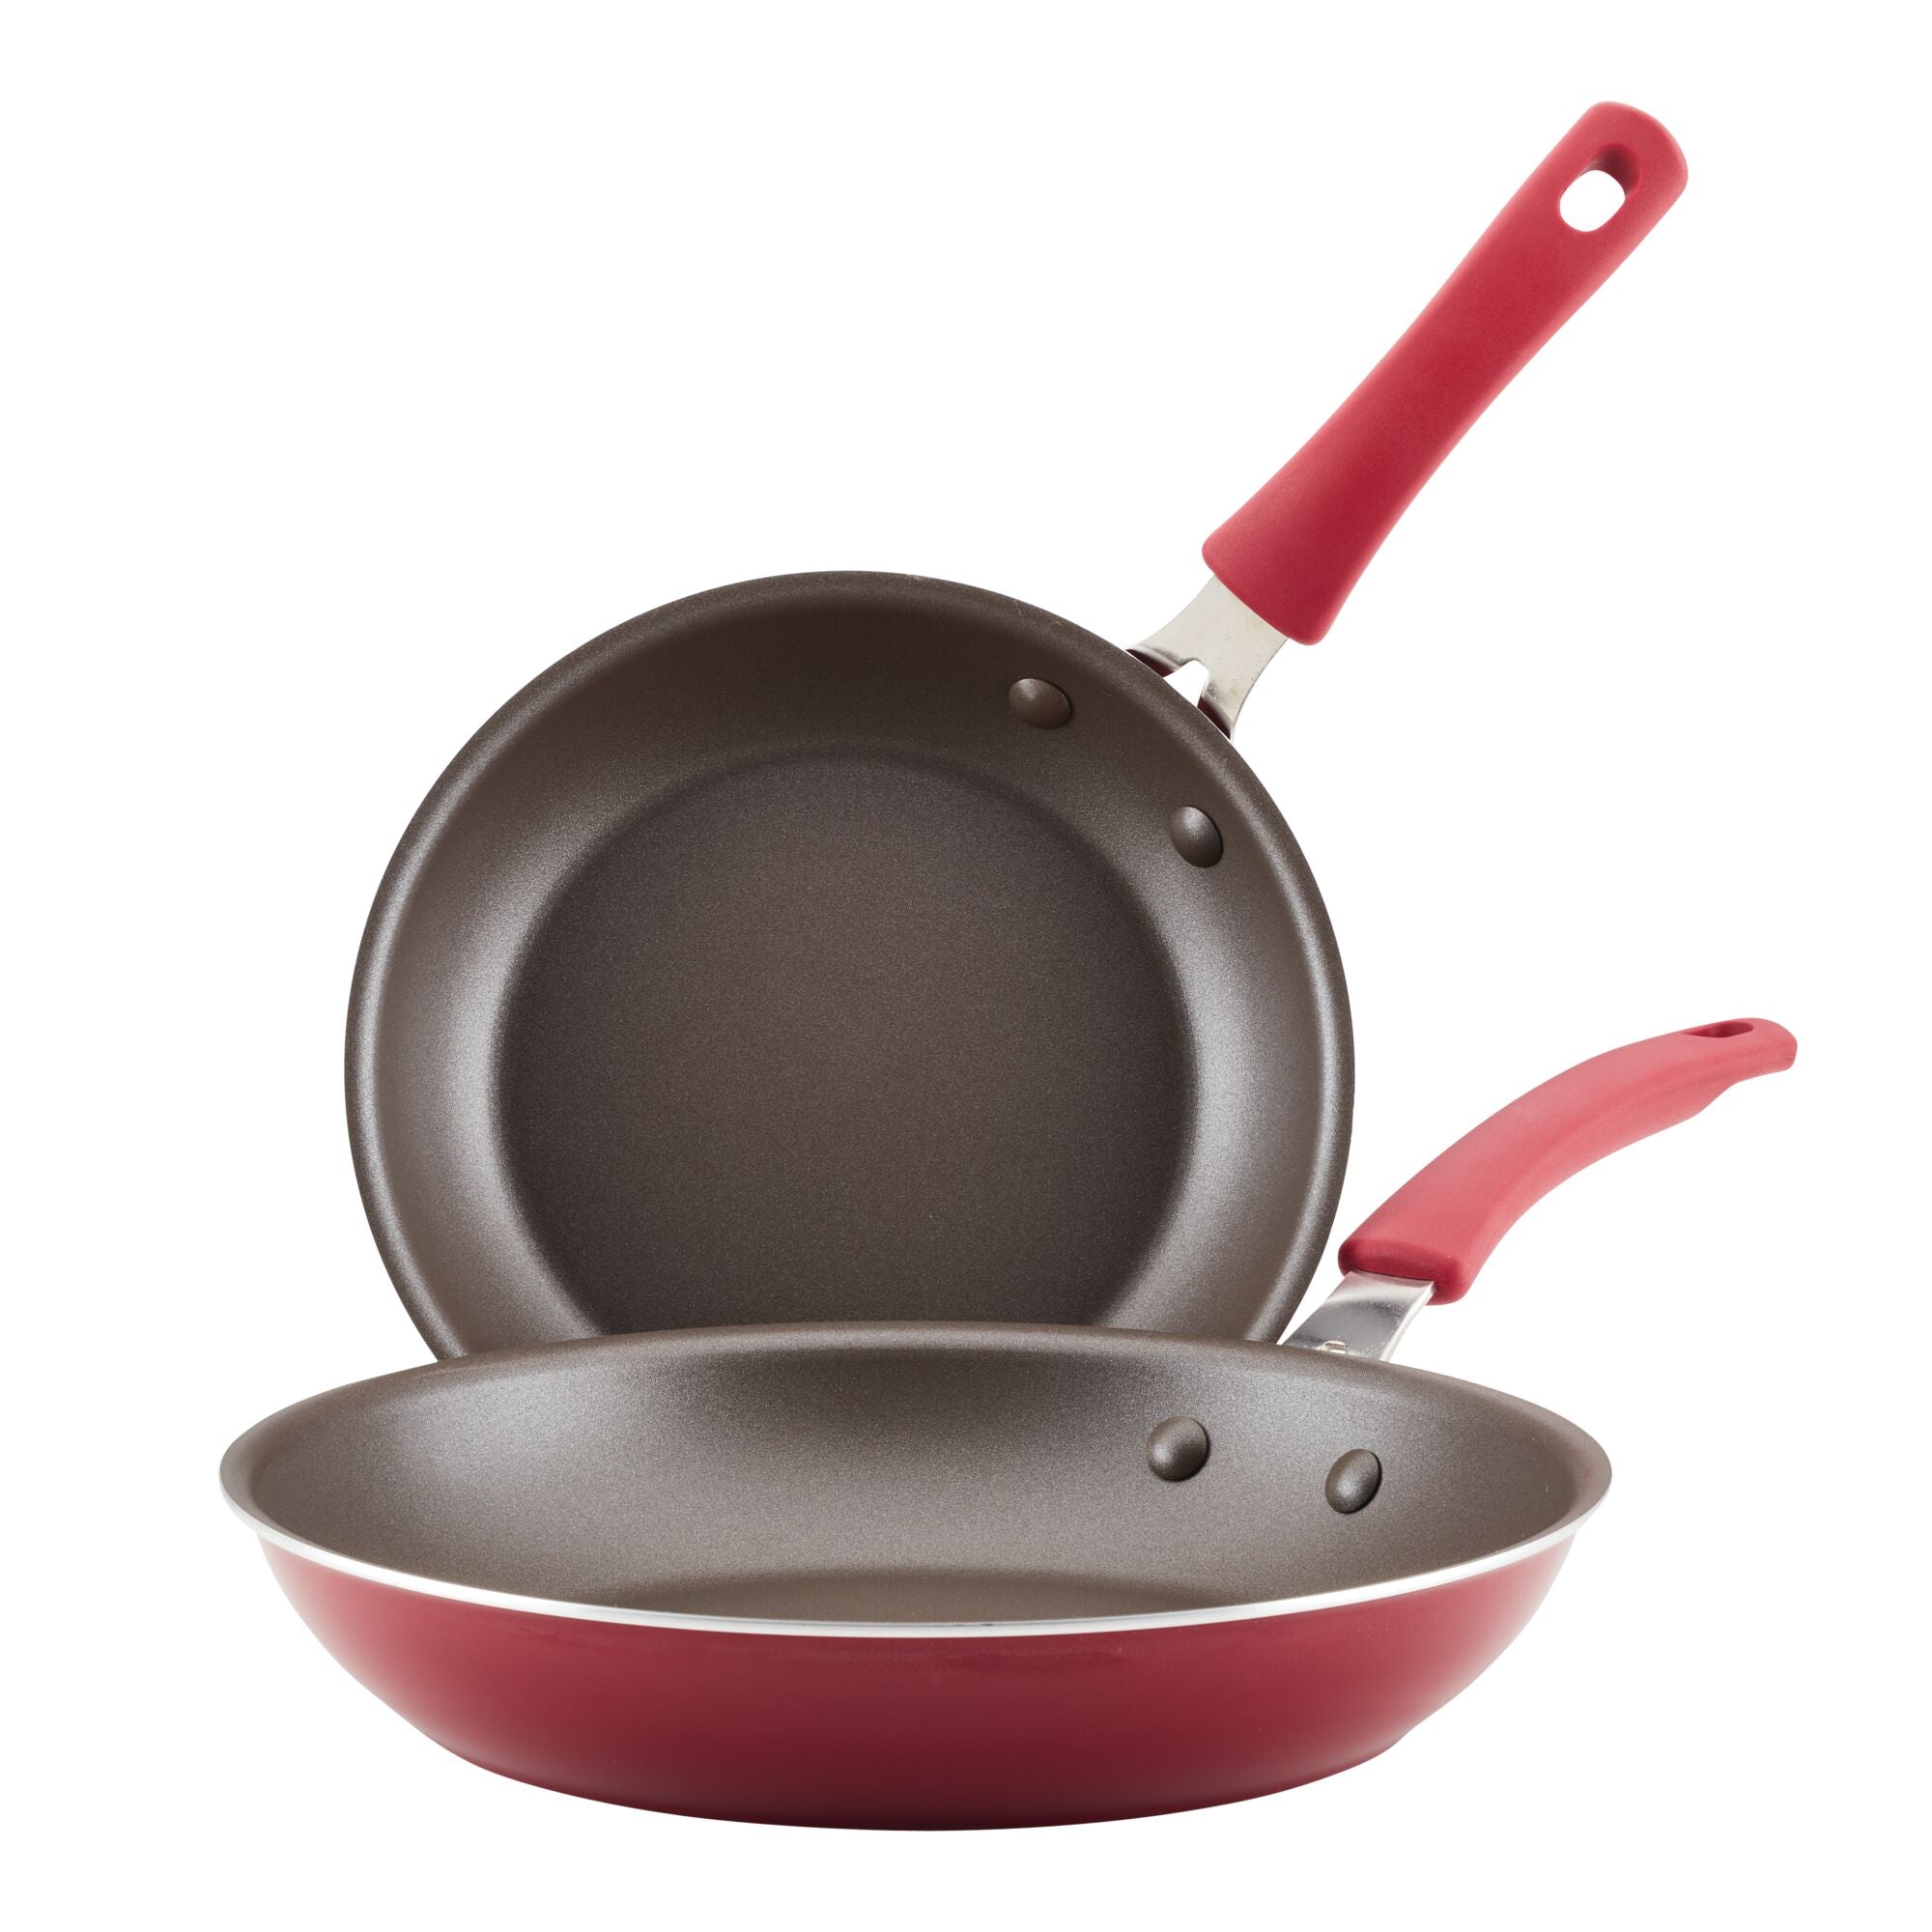 2-Piece Cook + Create Nonstick Frying Pan Set